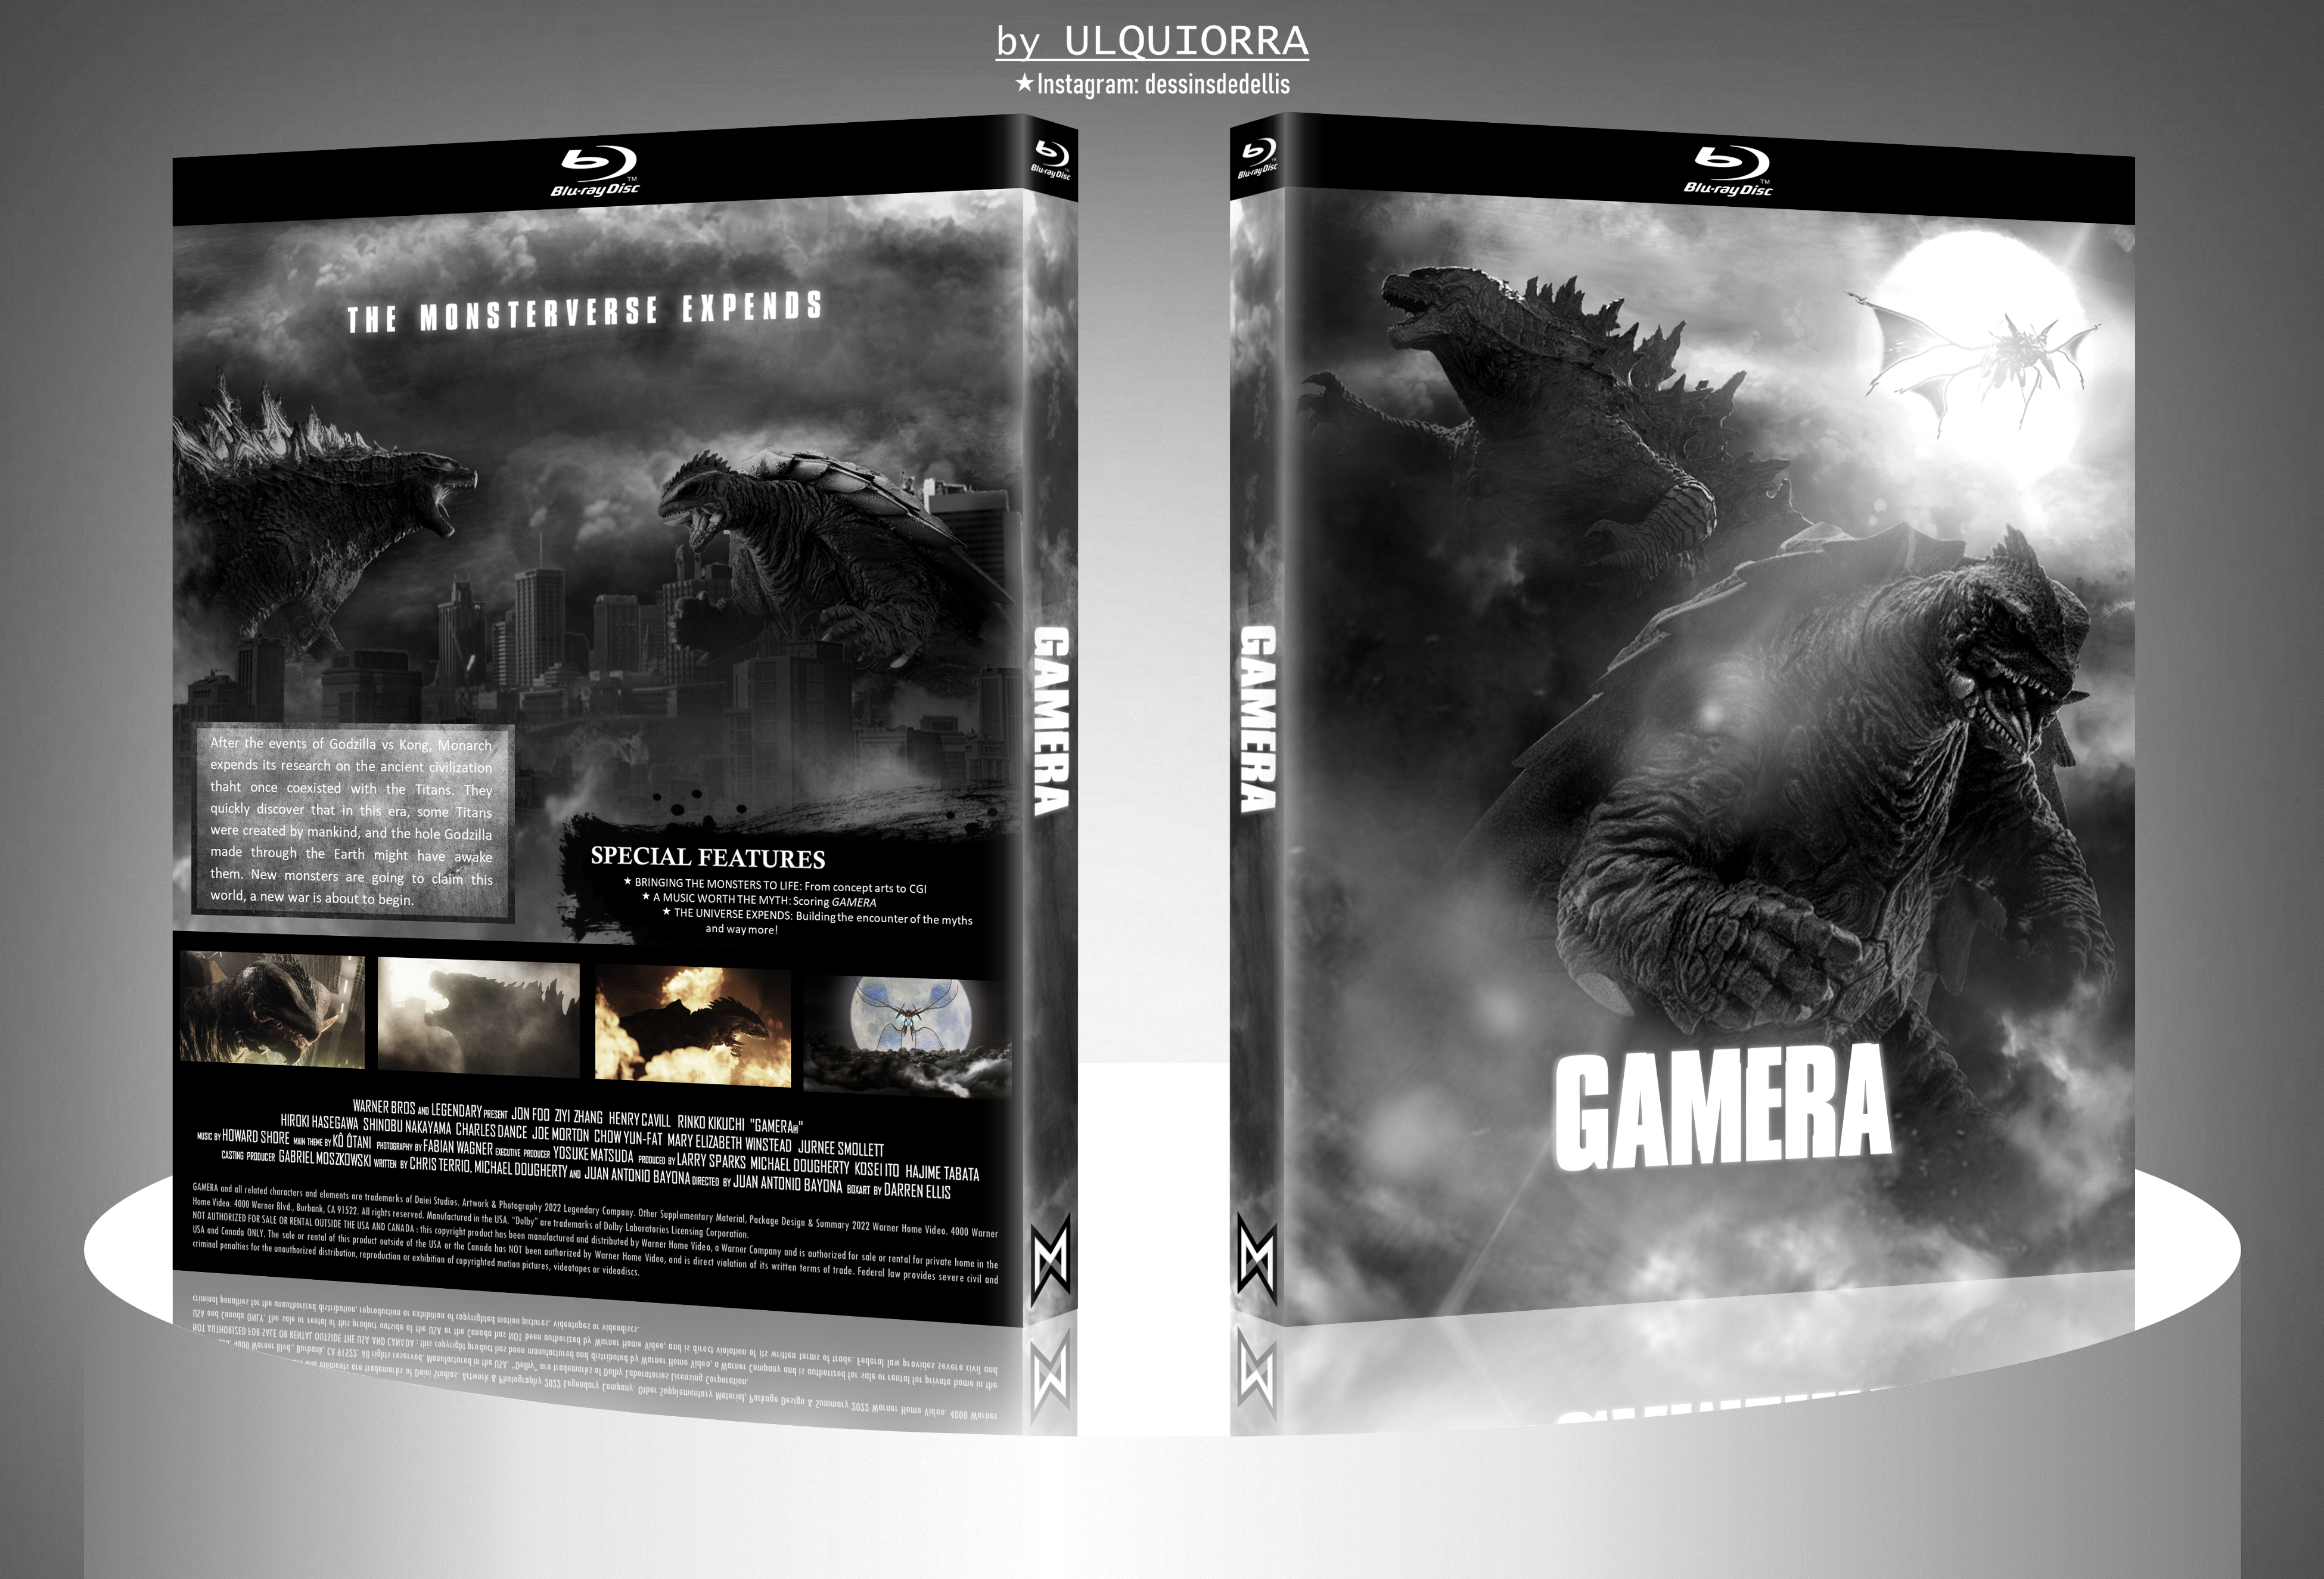 Gamera box cover